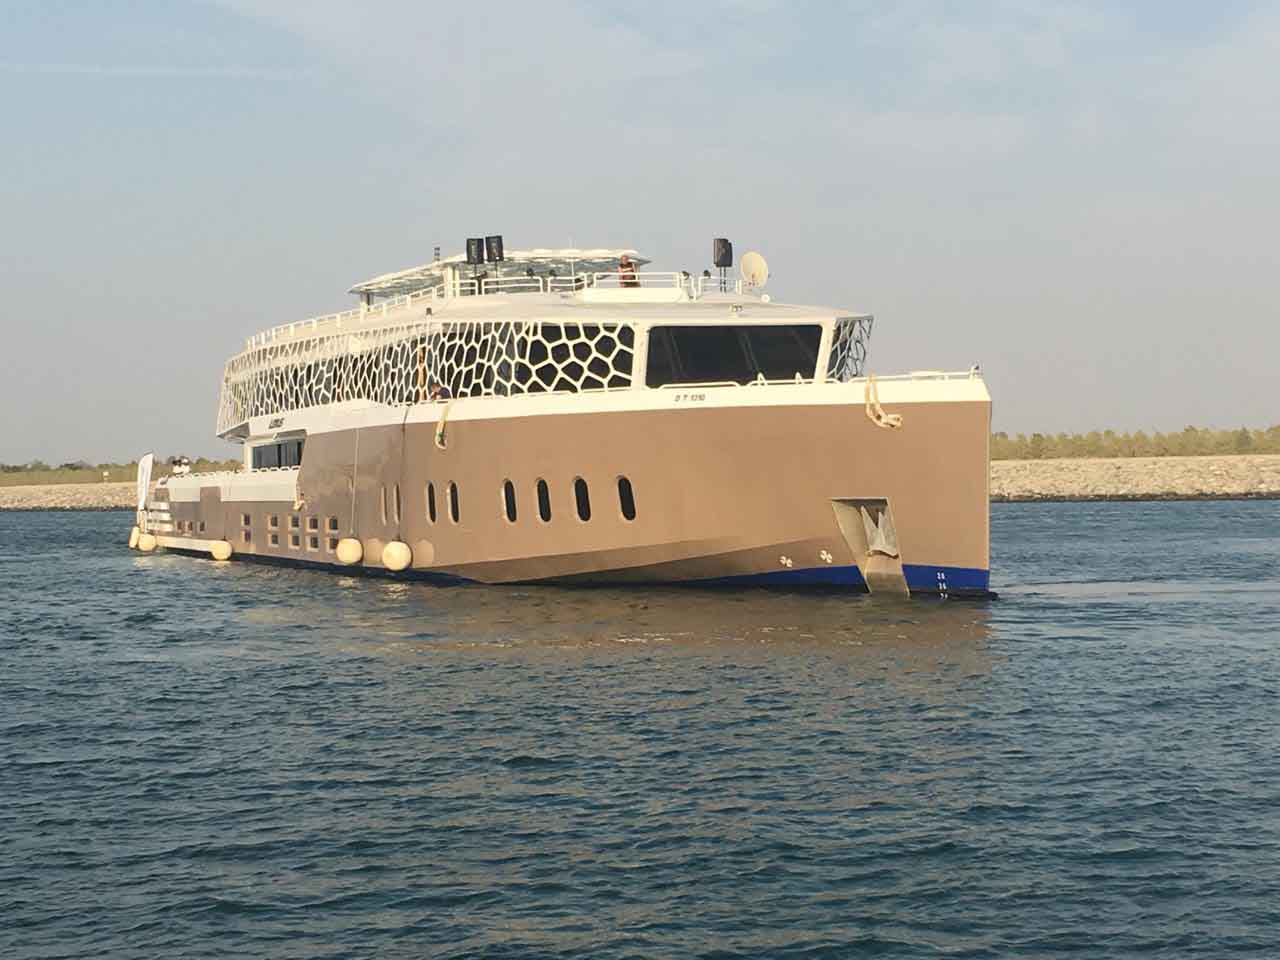 Яхта Вояджер Элит Опал 220 футов аренда яхты Дубай